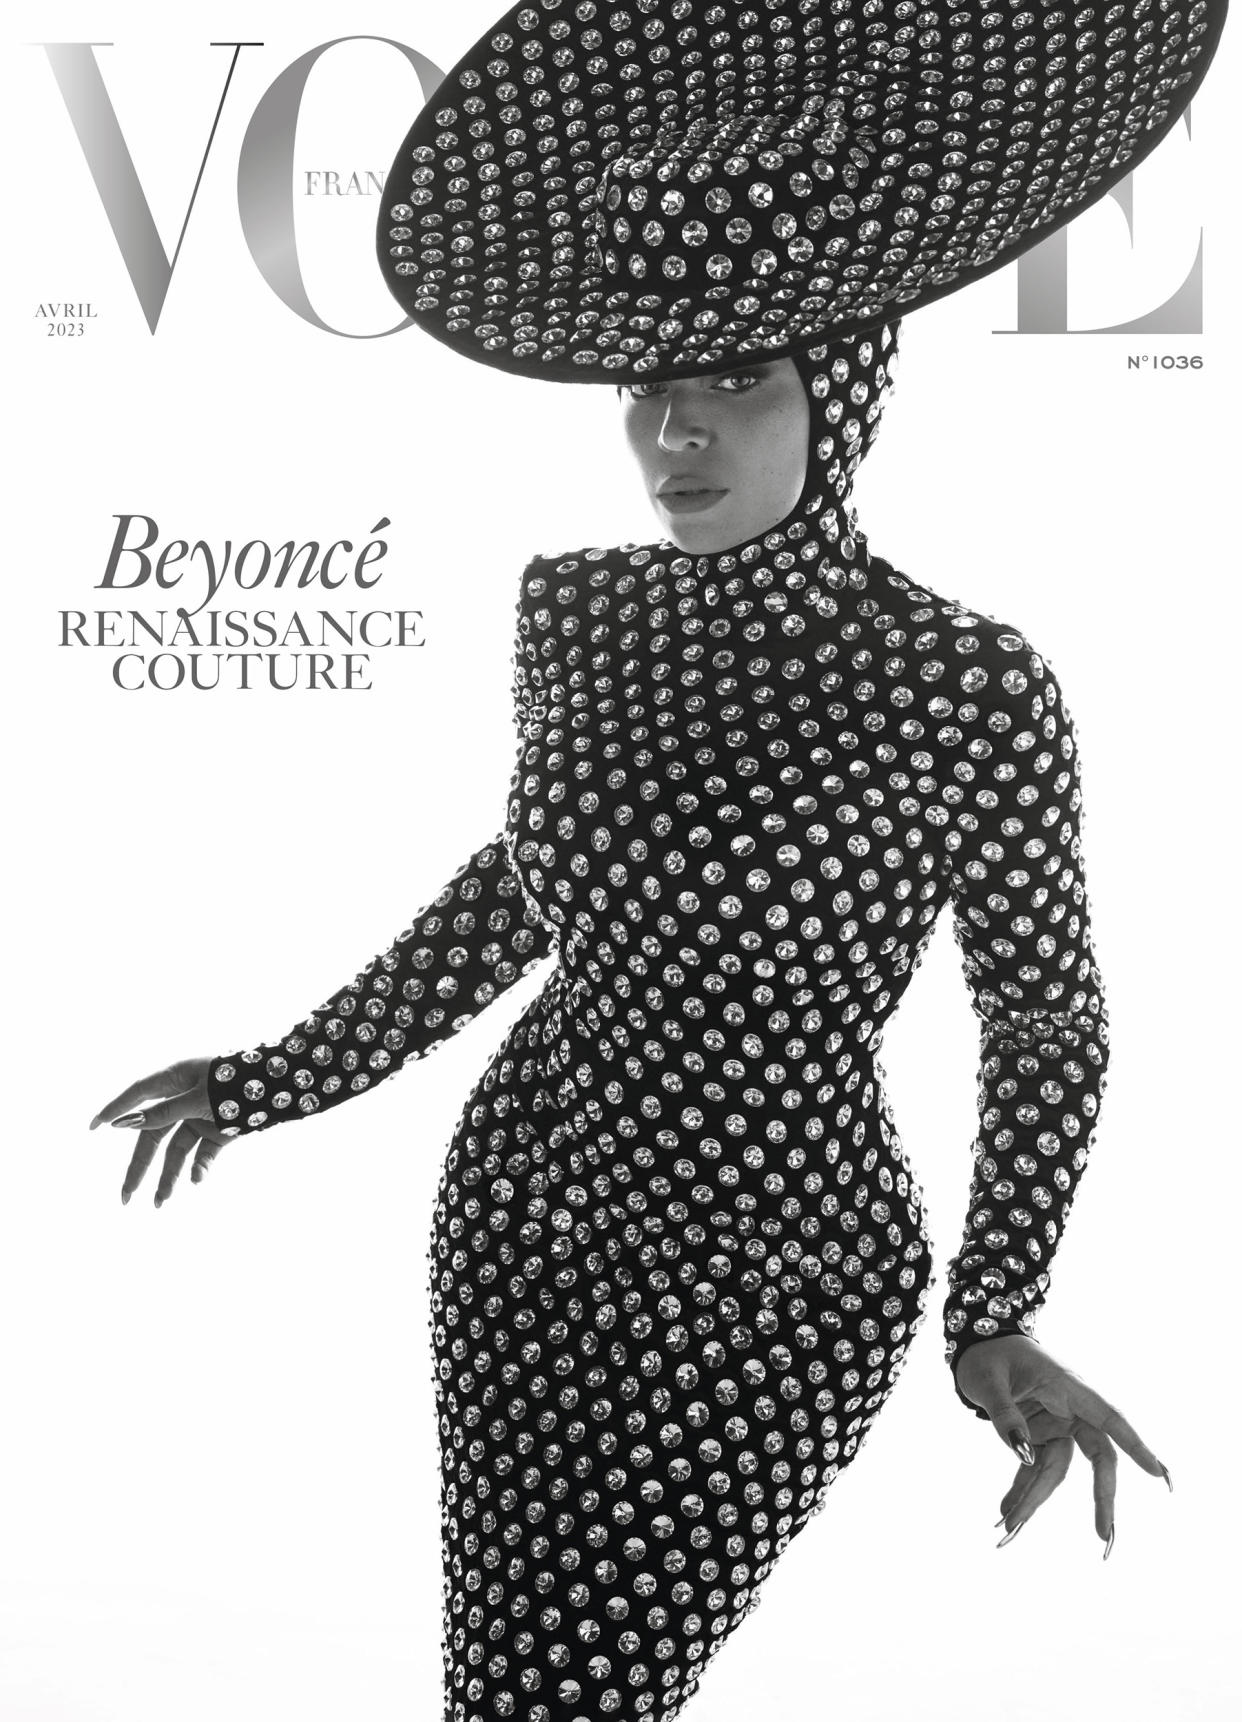 Beyoncé in her 